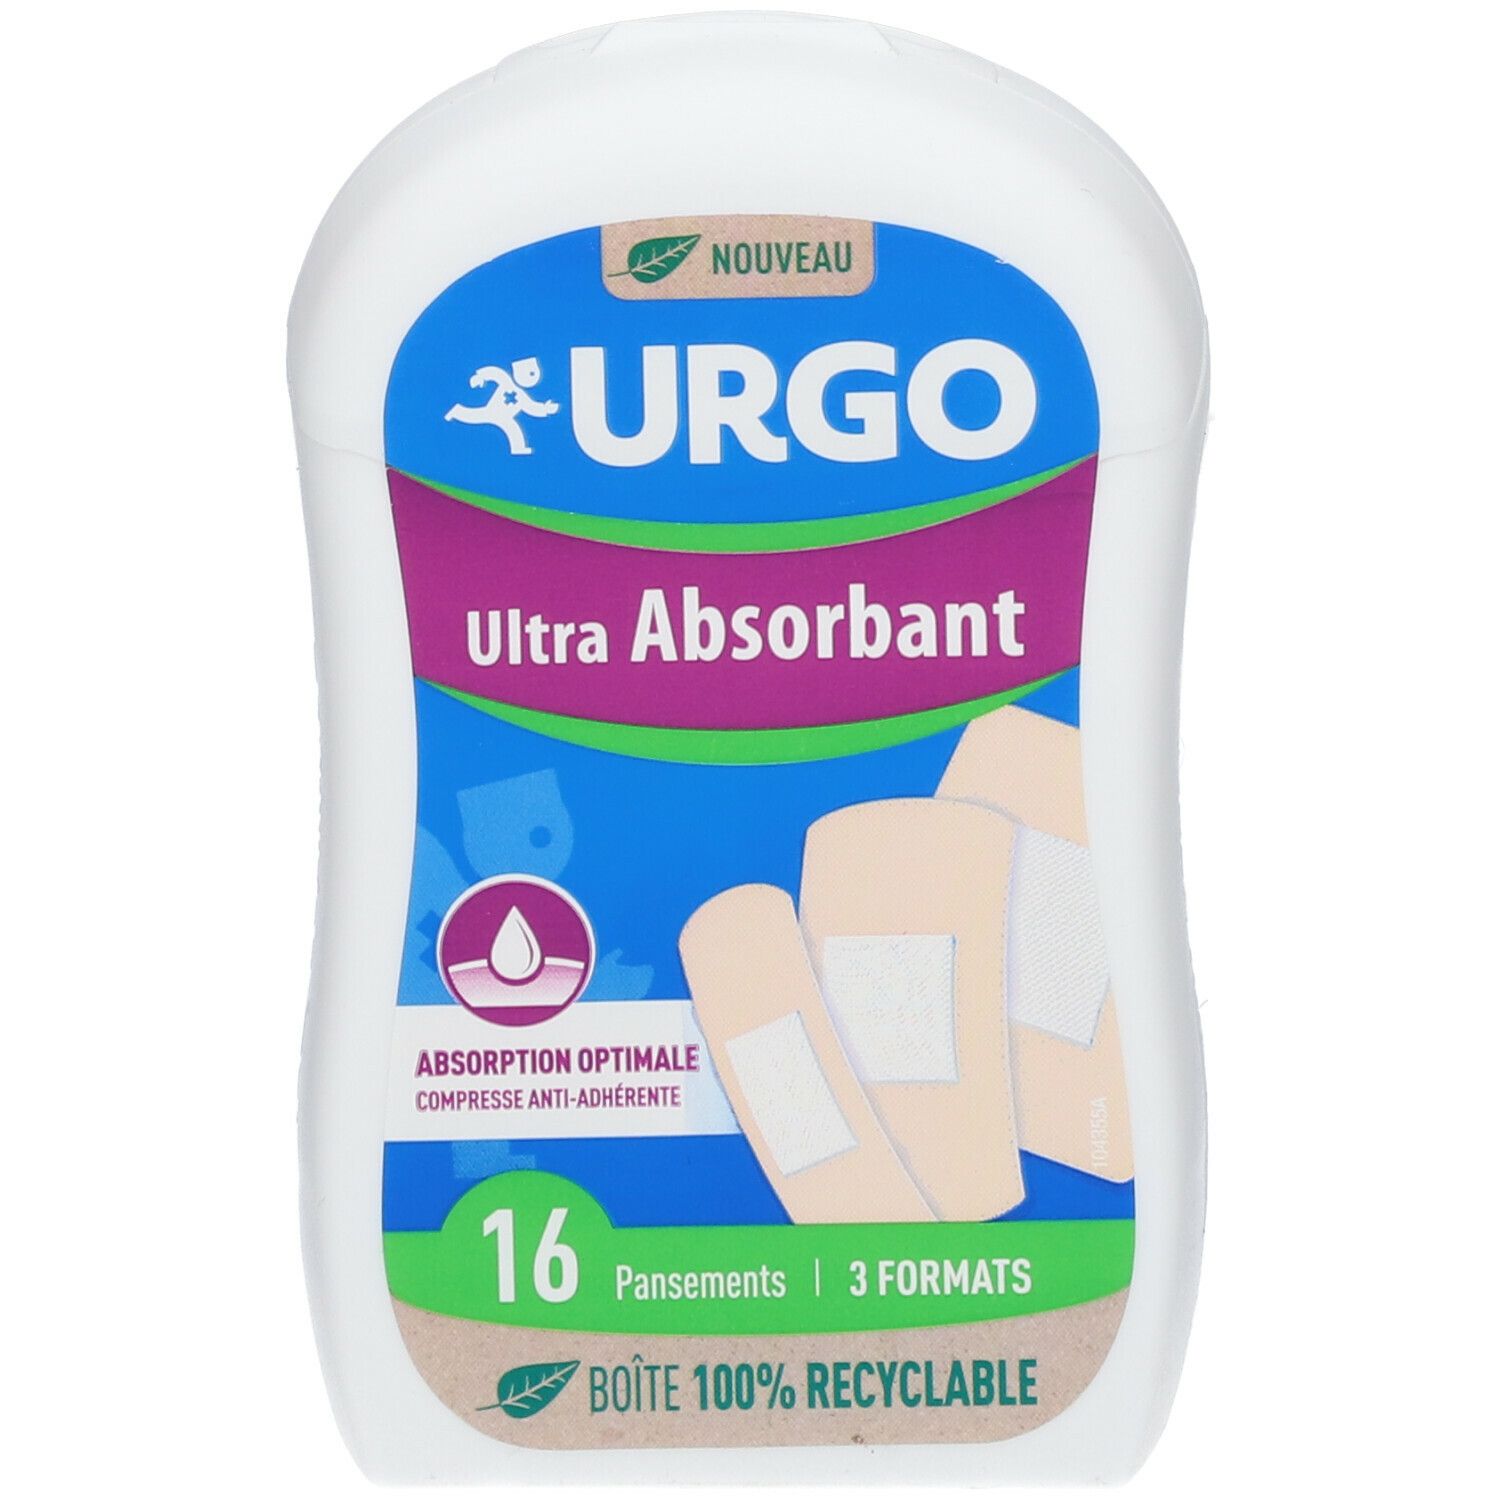 Urgo Ultra-Absorbant Pansement